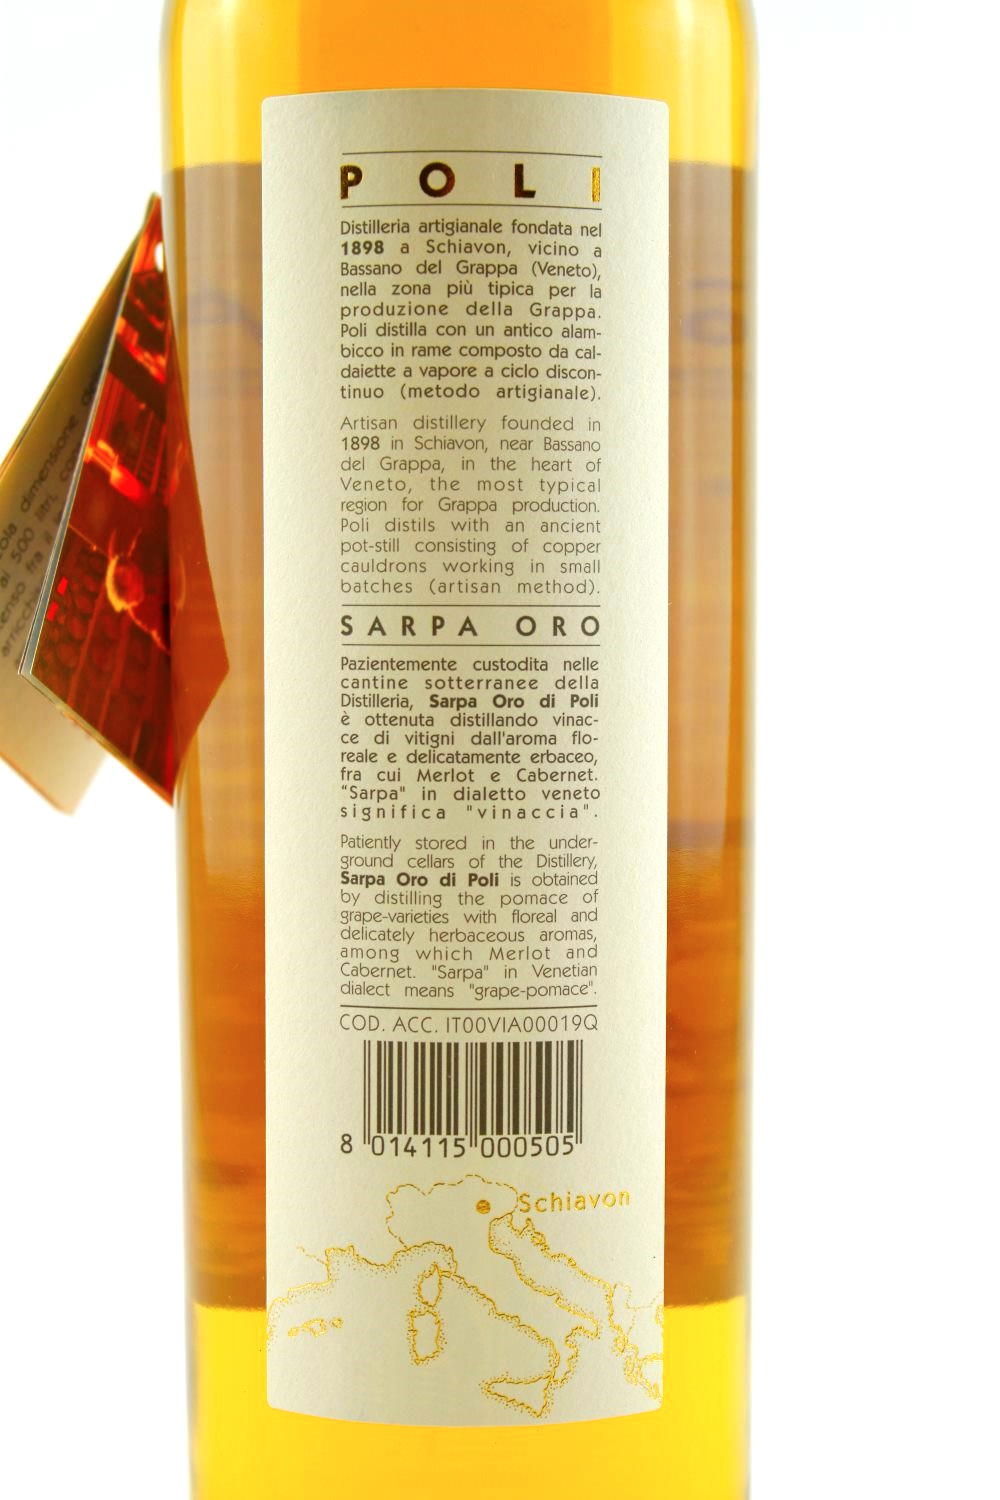 Grappa Sarpa Jacopo Oro di vol. Poli 40% Poli Distillery 1898